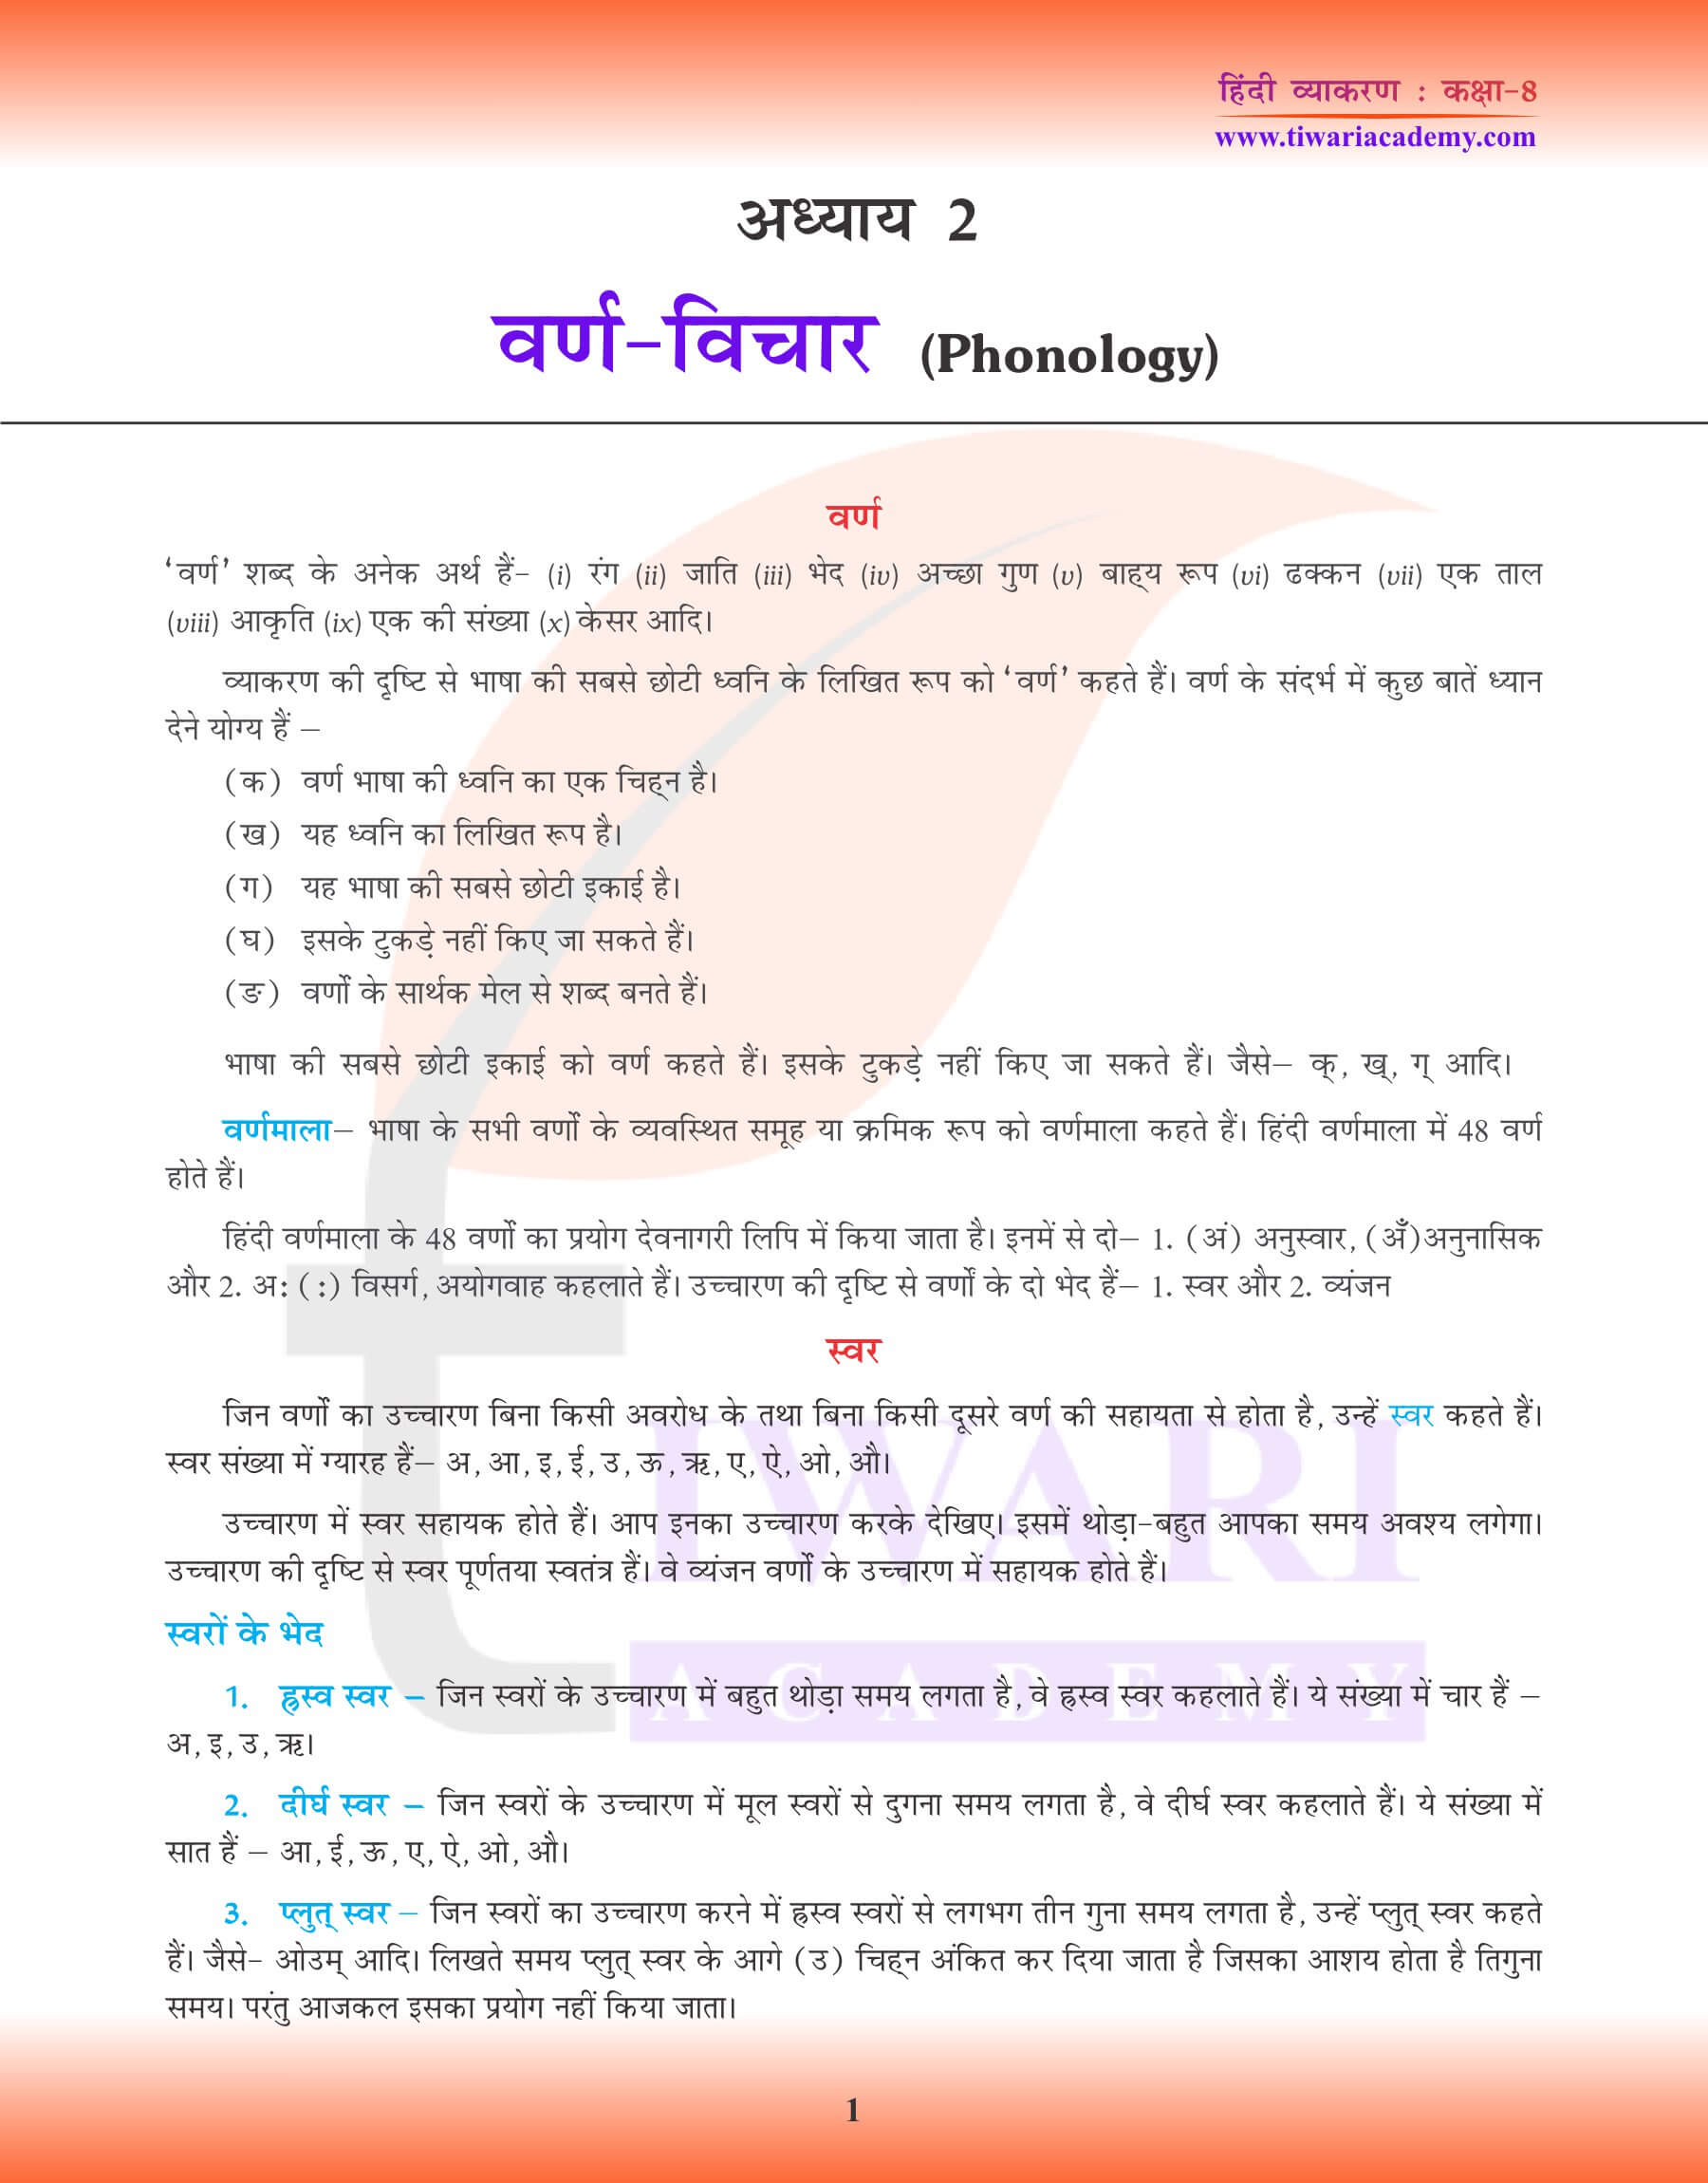 कक्षा 8 हिंदी व्याकरण अध्याय 2